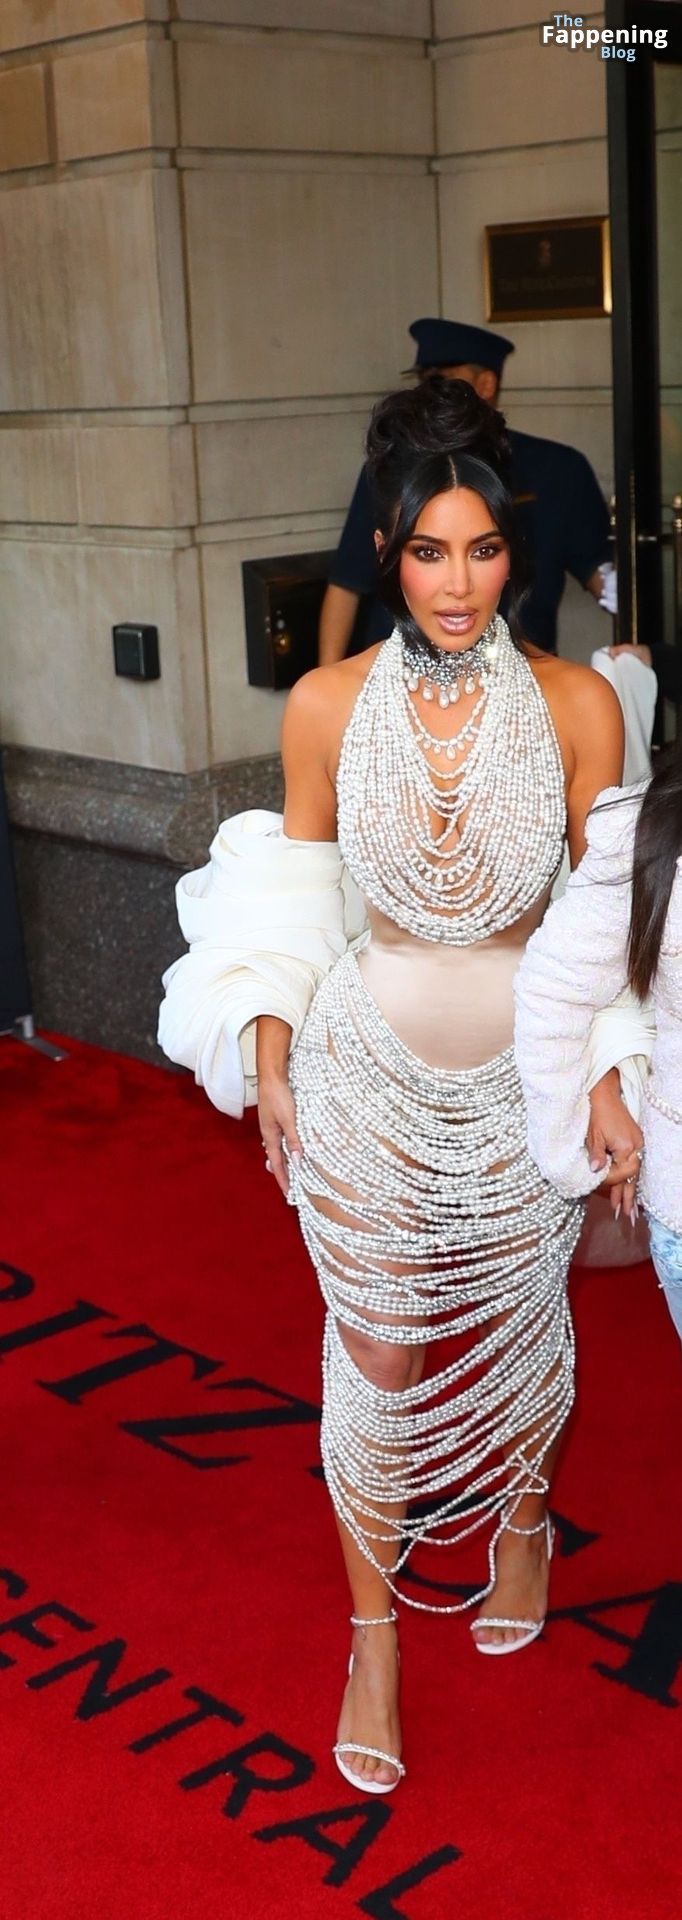 Kim-Kardashian-Sexy-The-Fappening-Blog-134.jpg